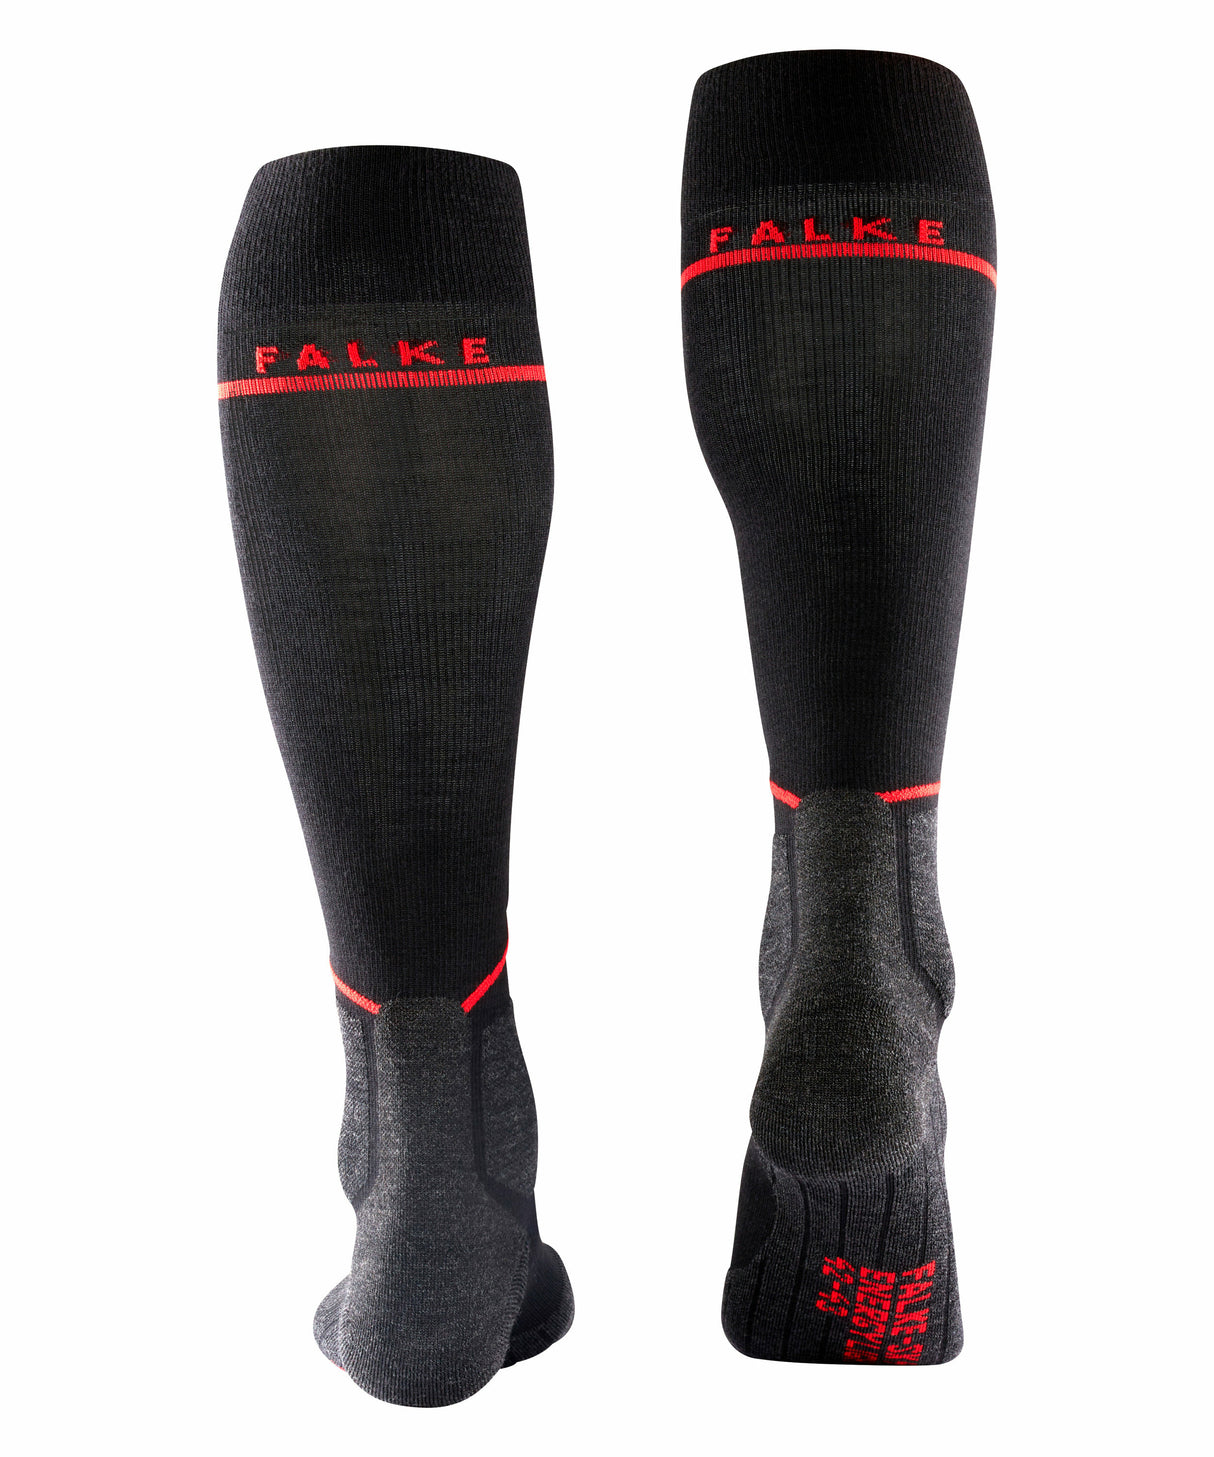 Falke SK2 Energising Women's Ski Socks